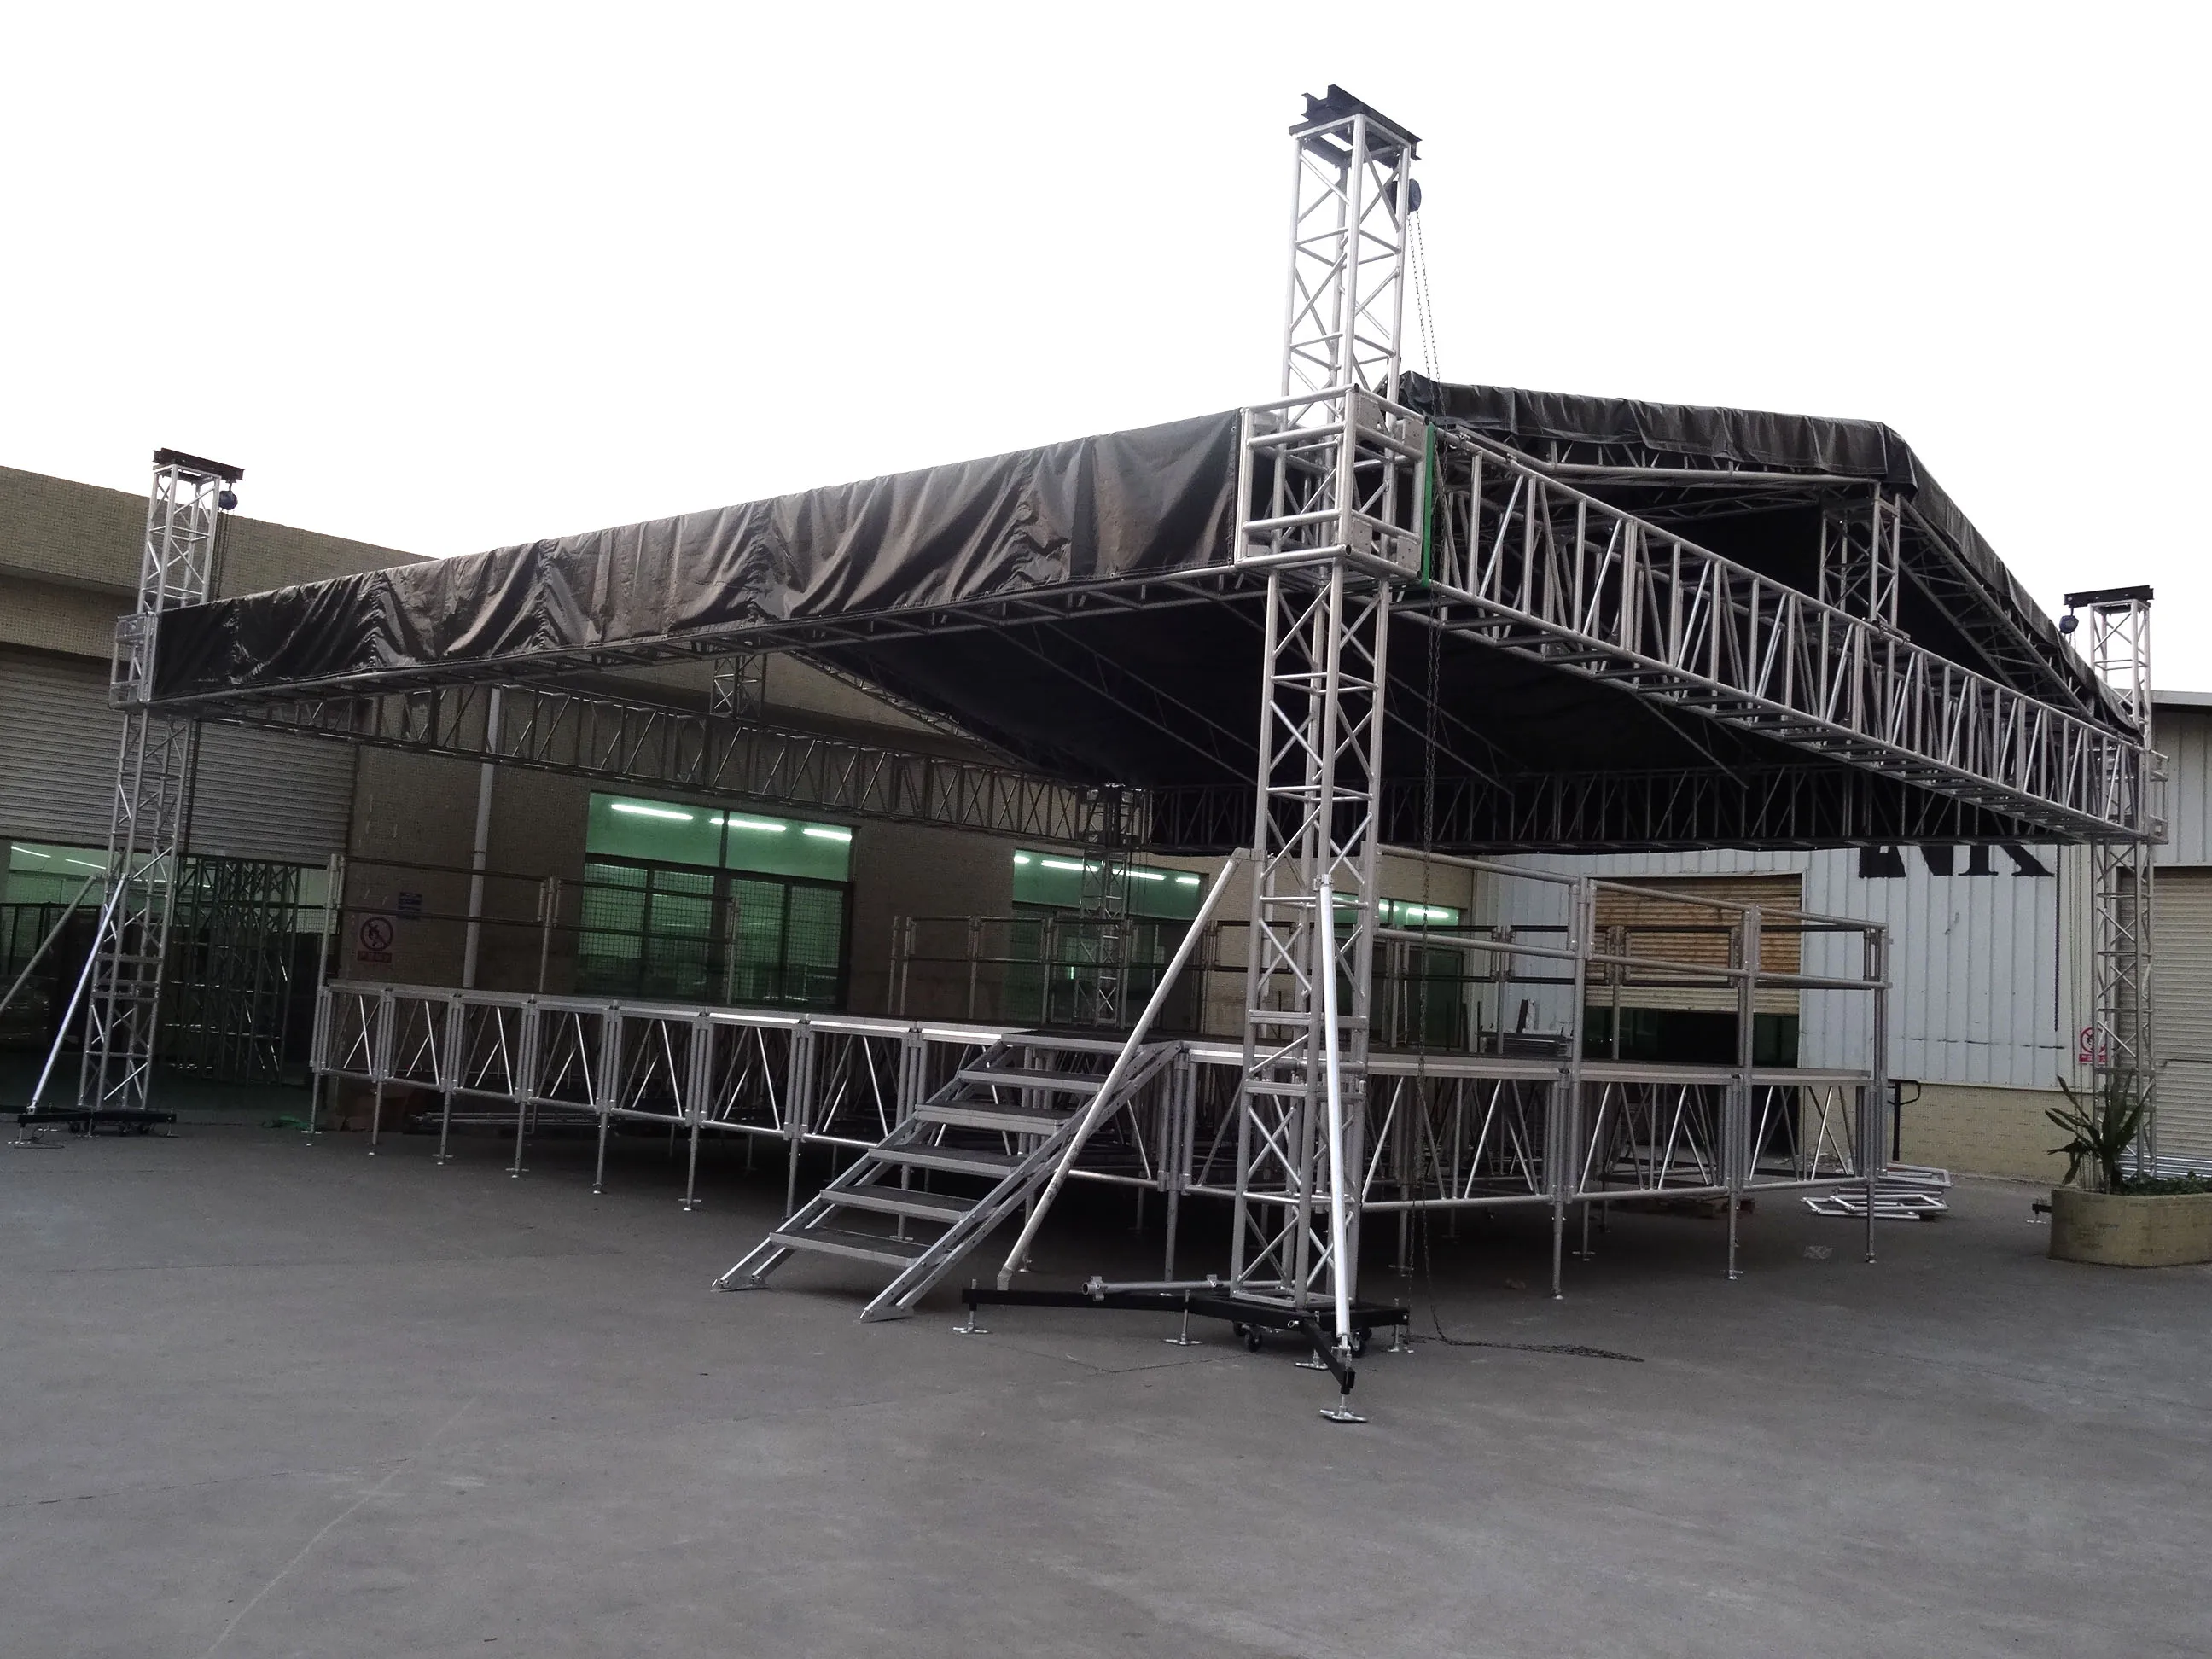 大型项目铝舞台屋顶帐篷桁架显示用于户外活动音乐音乐会